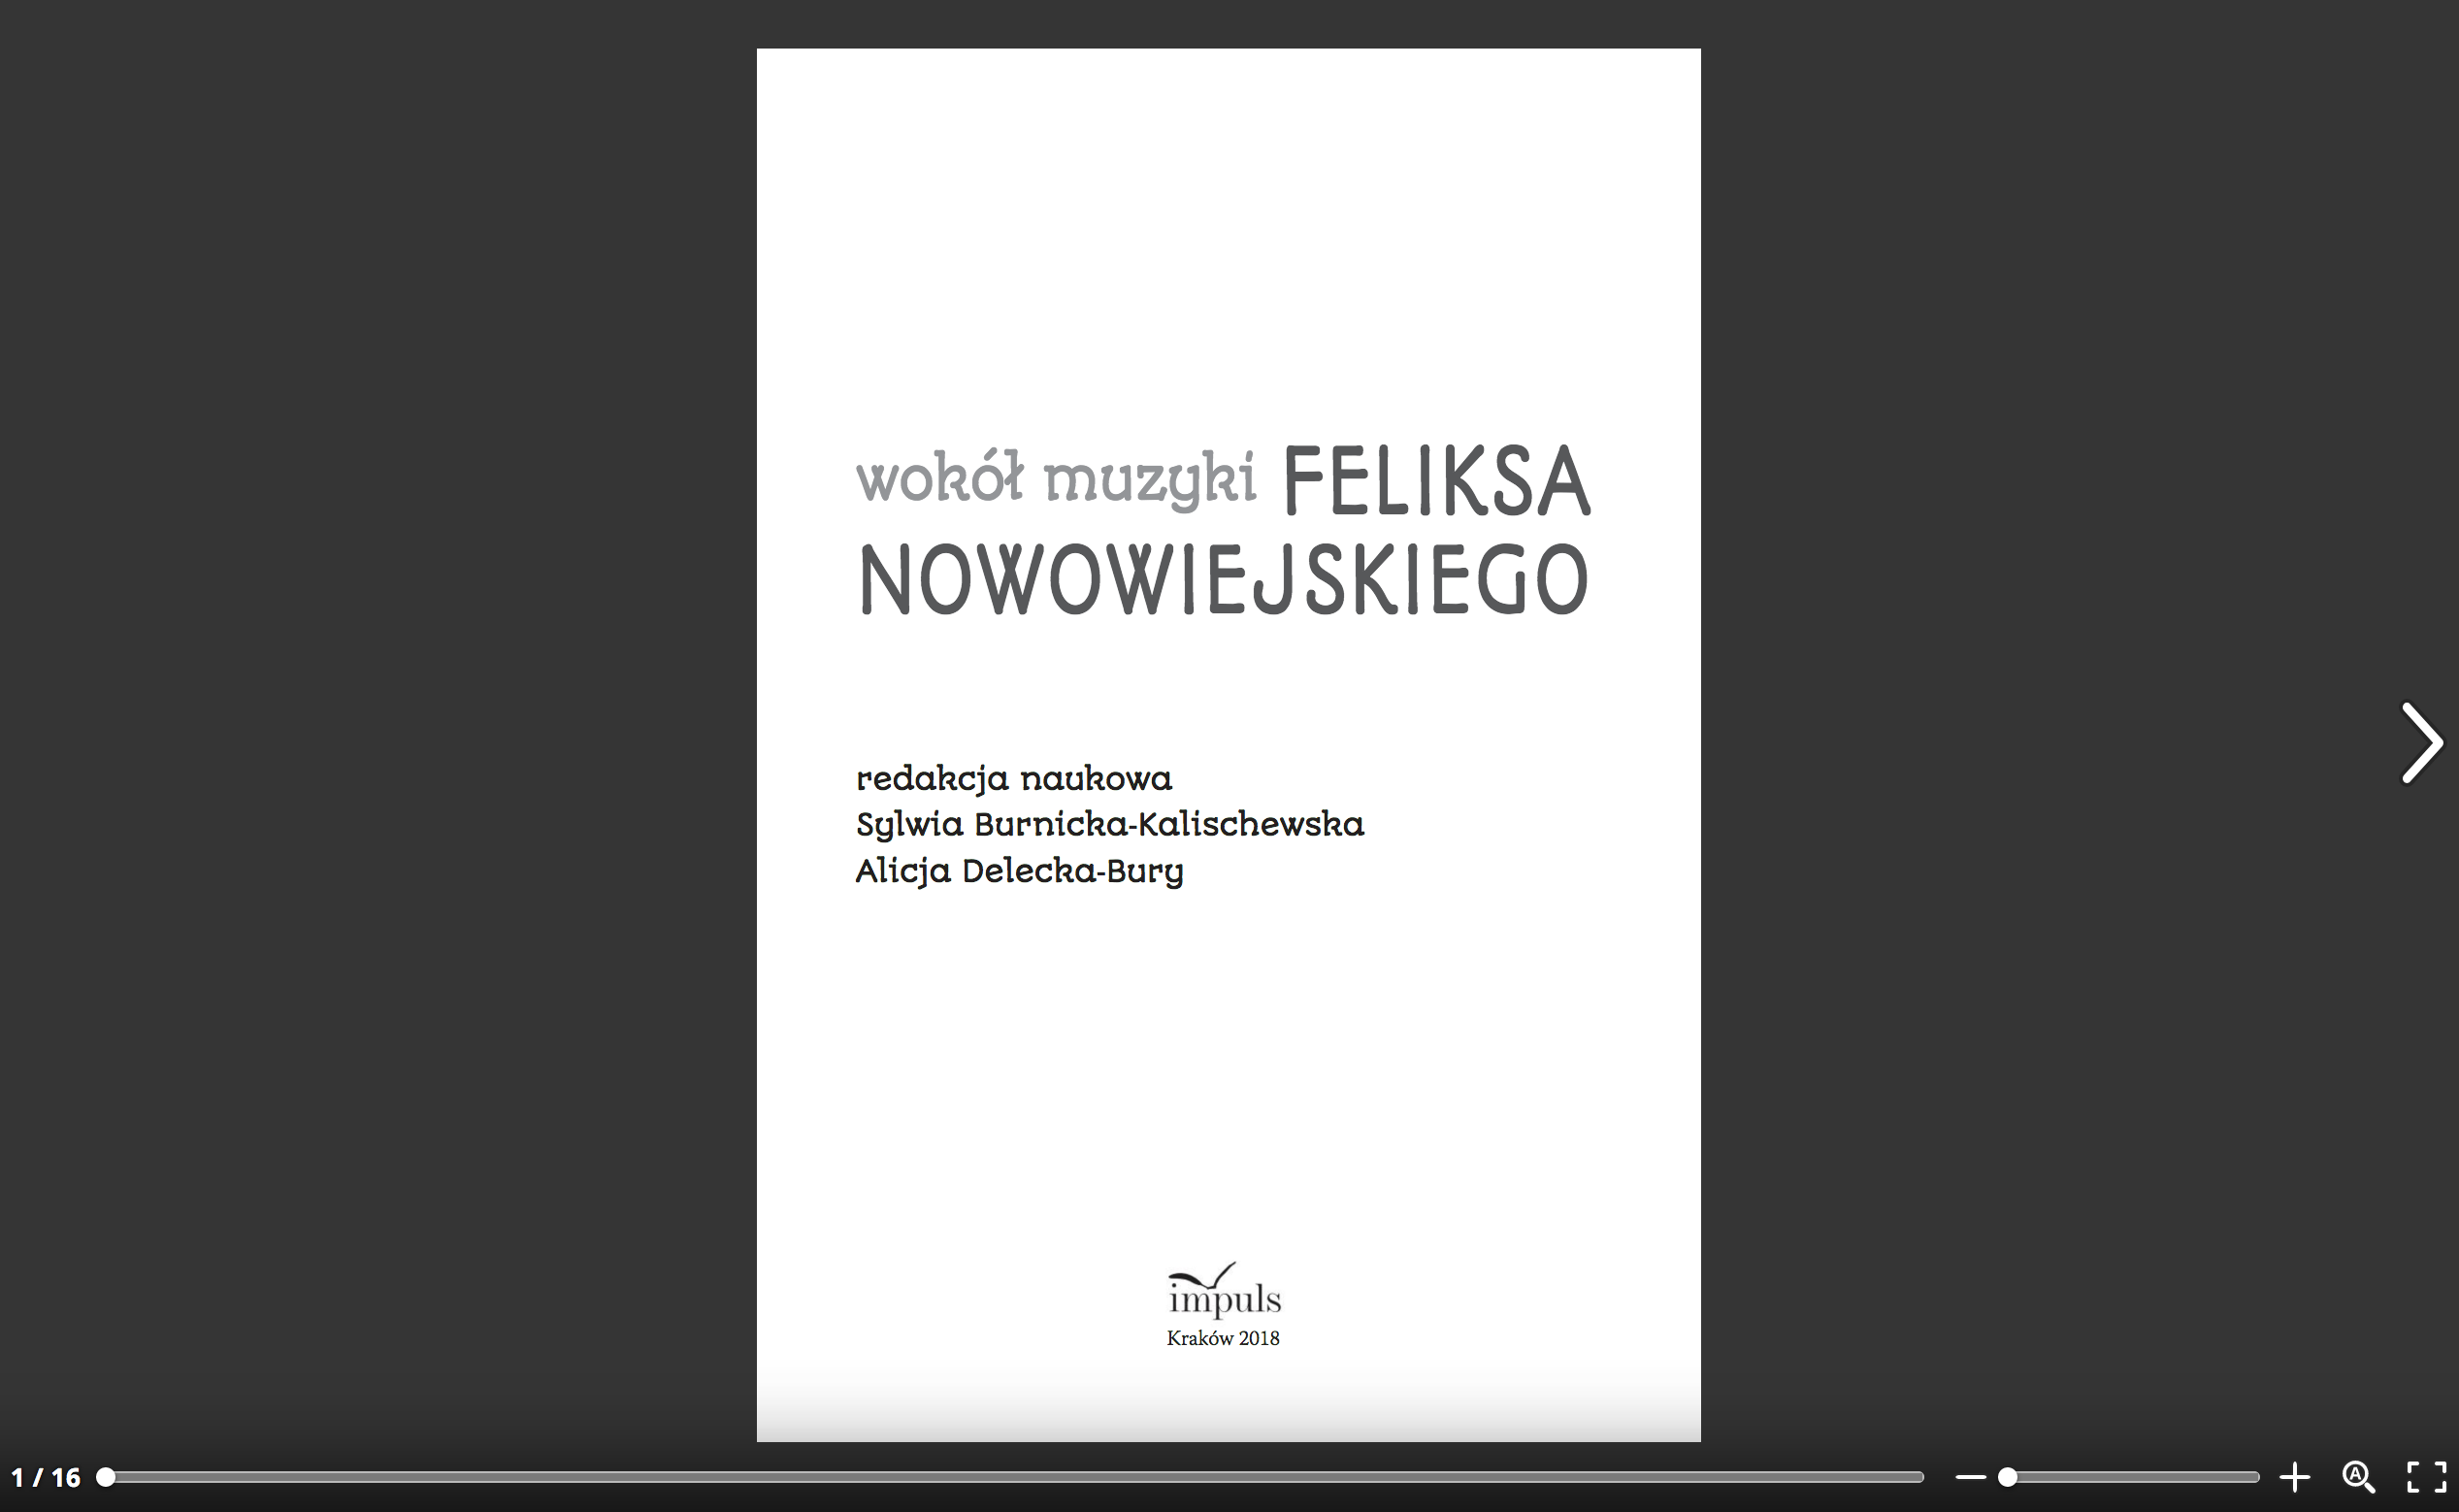   Wokół muzyki Feliksa Nowowiejskiego (wersja papierowa) - fragment